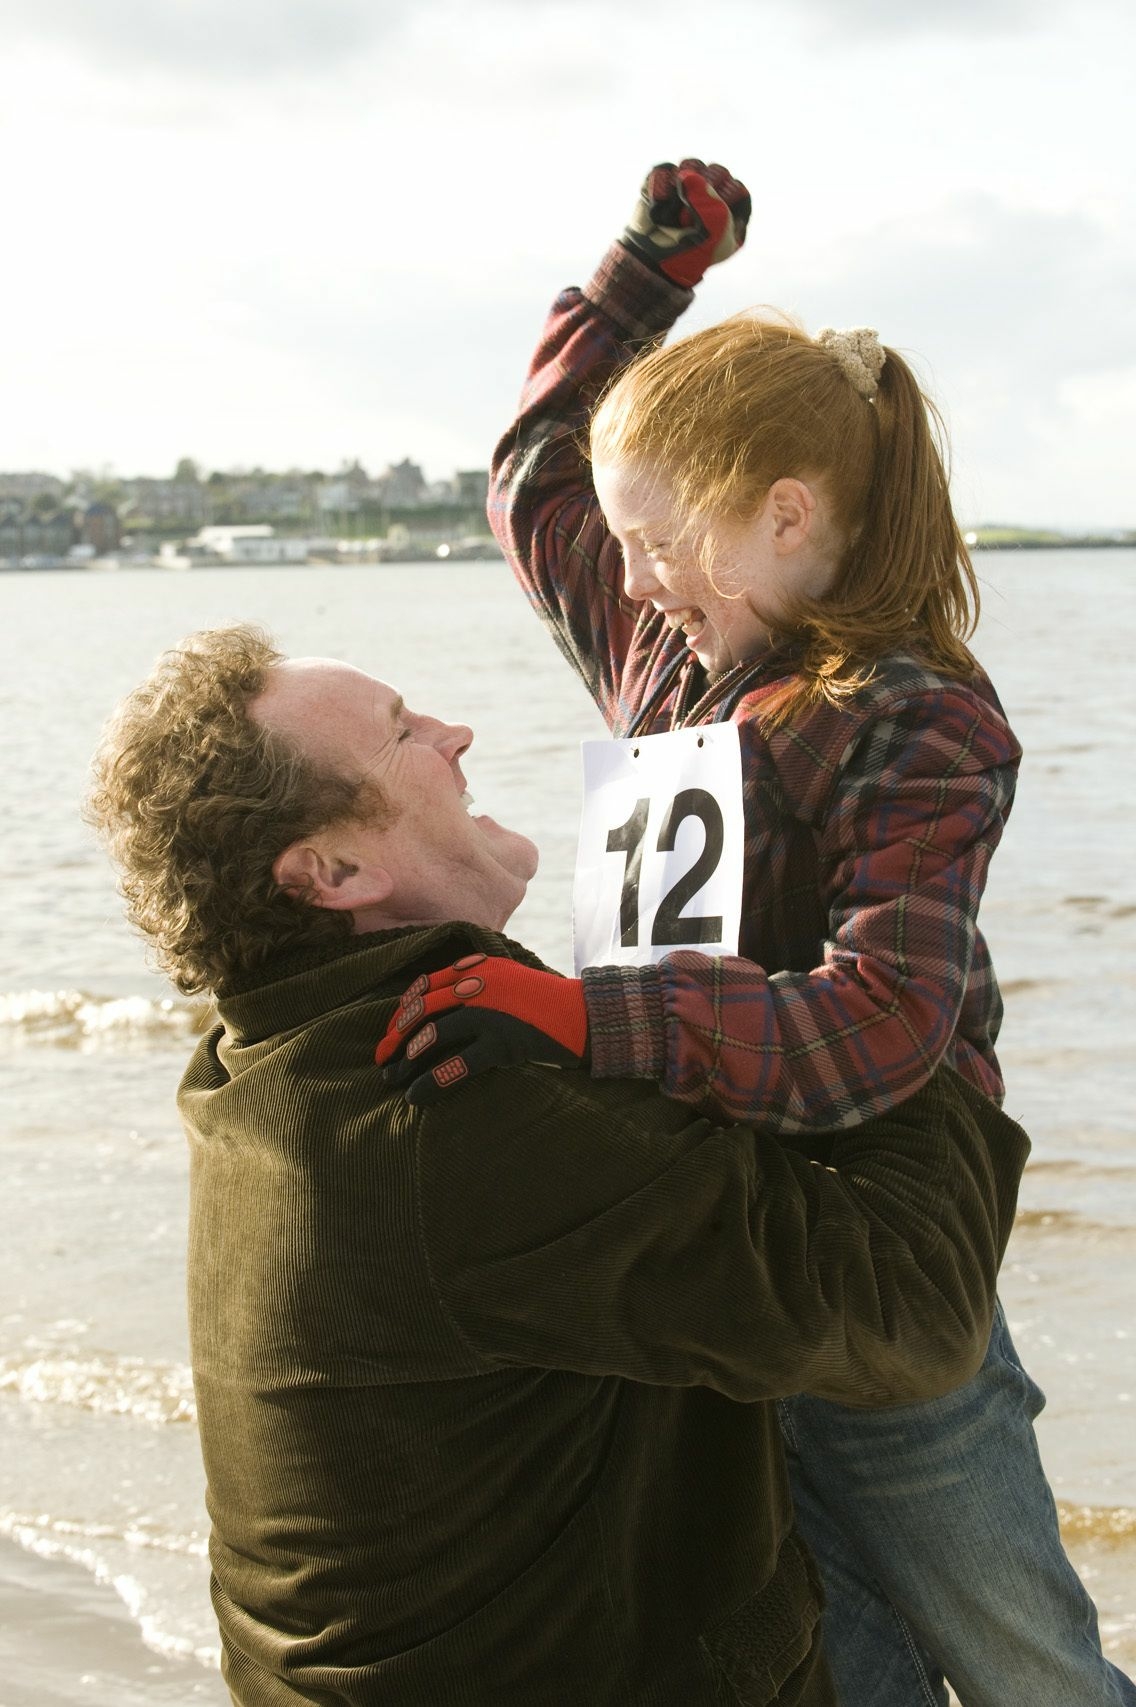 Szenenbild: Marys Vater hebt das Mädchen in Luft. Beide lachen und freuen sich über Marys Sieg beim Rennen.